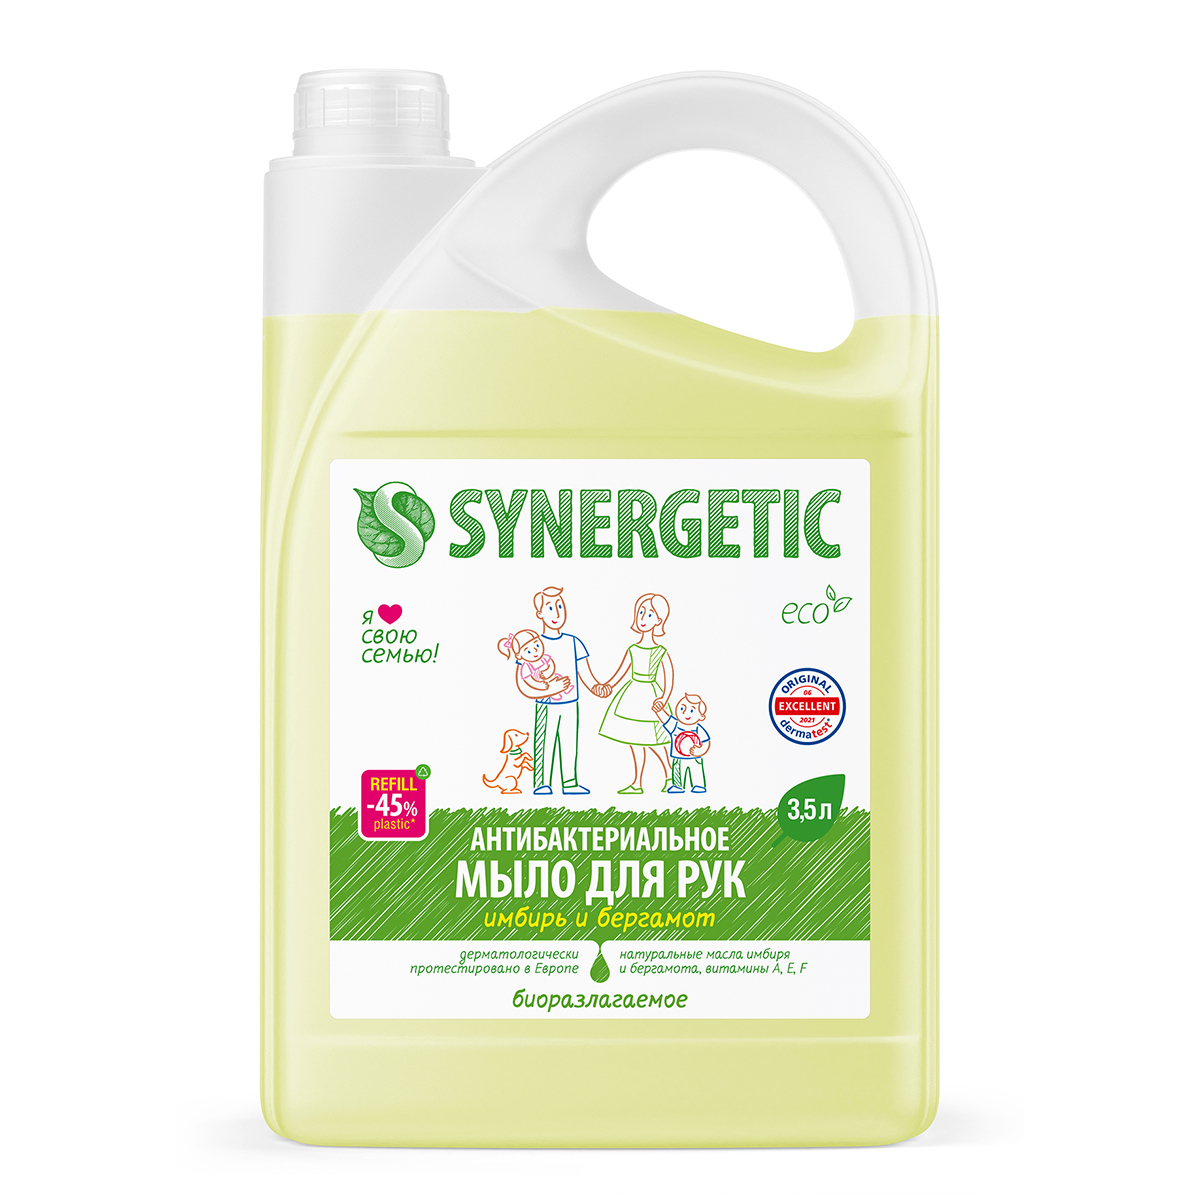 Купить жидкое мыло SYNERGETIC "Имбирь и бергамот" антибактериальное, с эффектом увлажнения, 3,5л, цены на Мегамаркет | Артикул: 600002196083